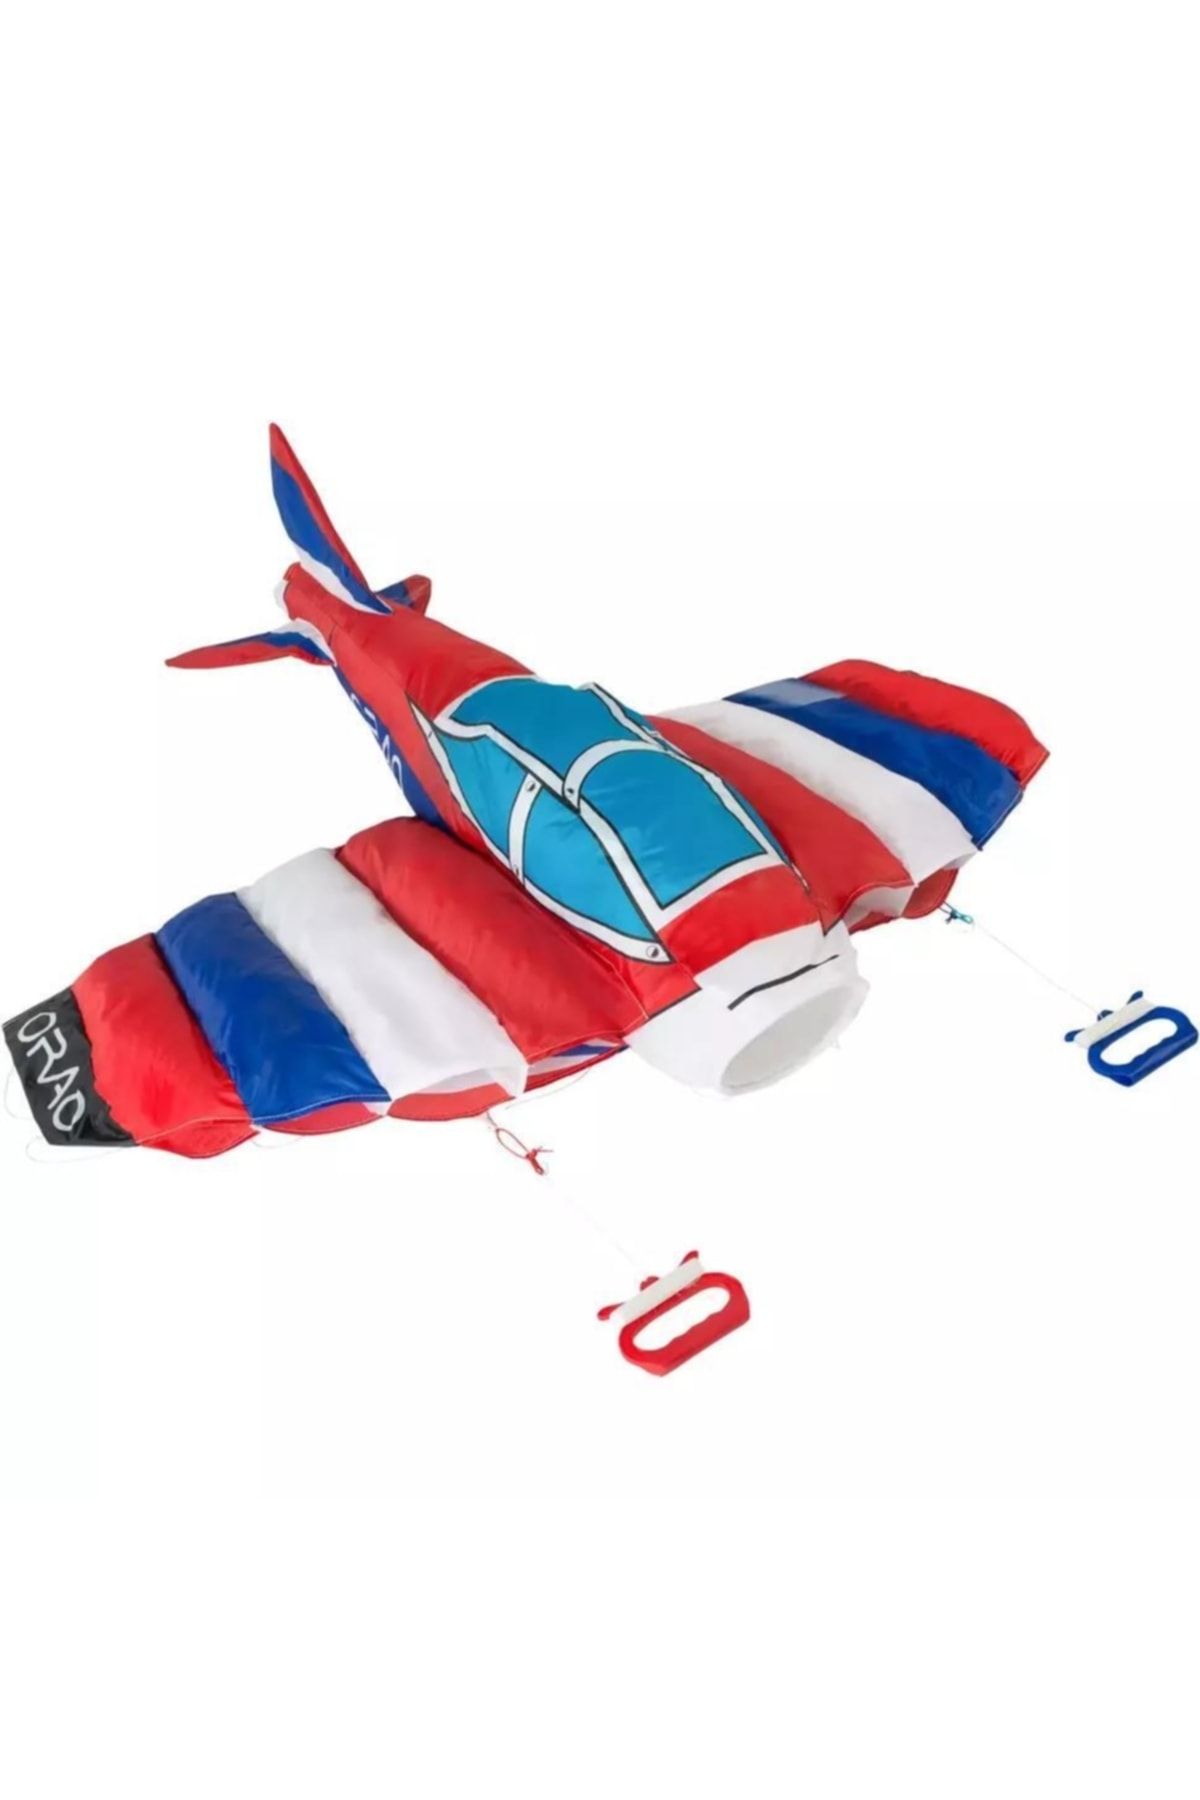 Decathlon - Akrobatik Uçurtma Çocuk Renkli Voltige